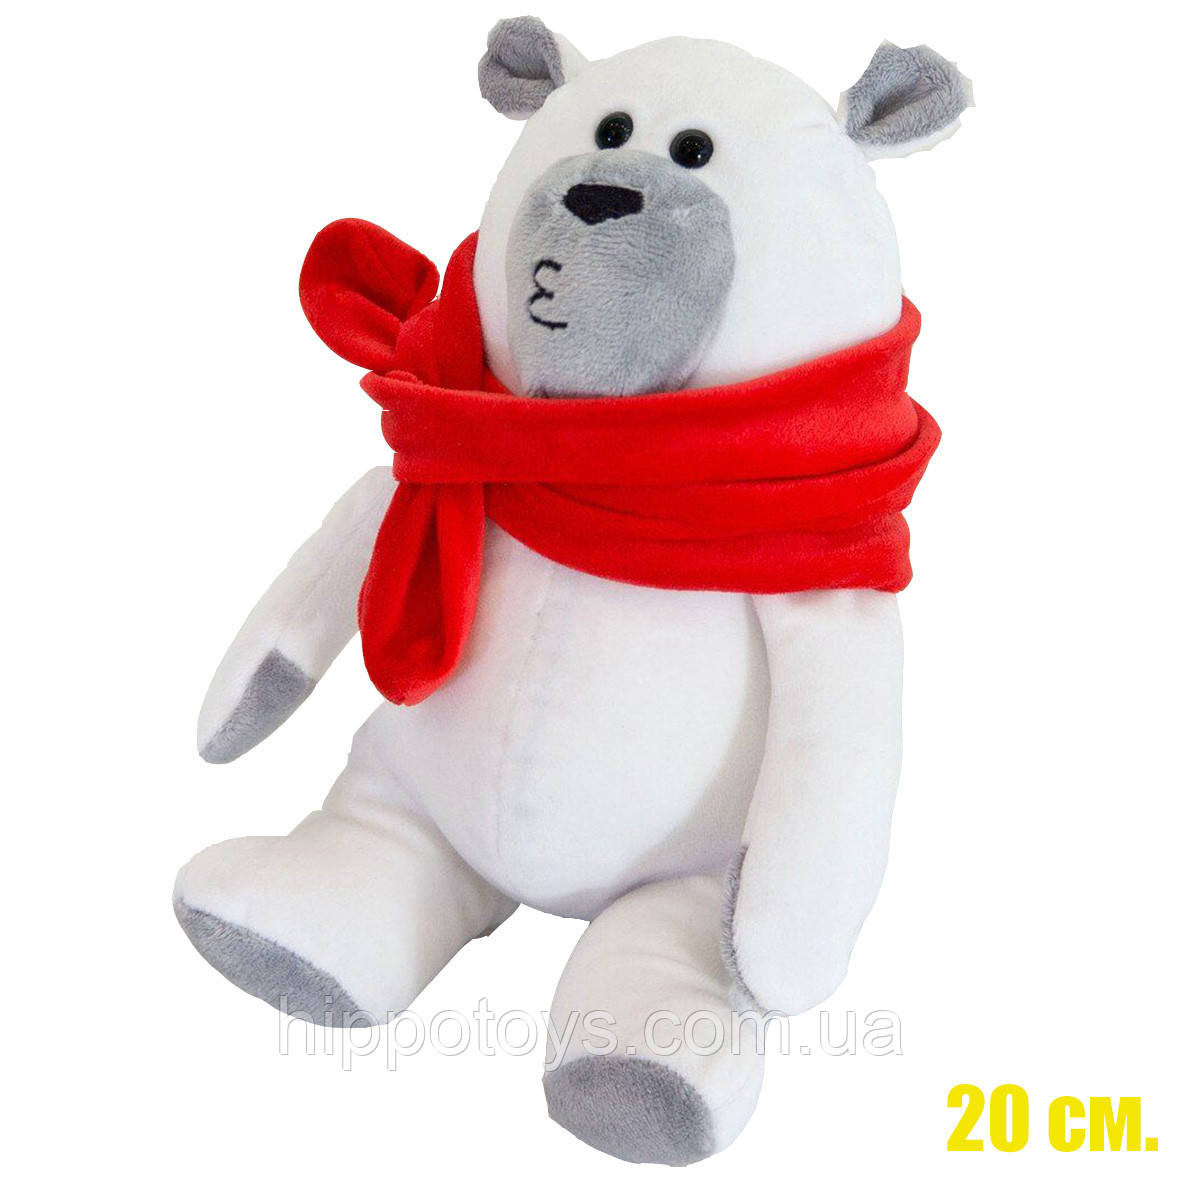 Білий плюшевий ведмедик М'яка іграшка ведмідь Маршмеллоу 20 см Білий ведмежа маленький 627